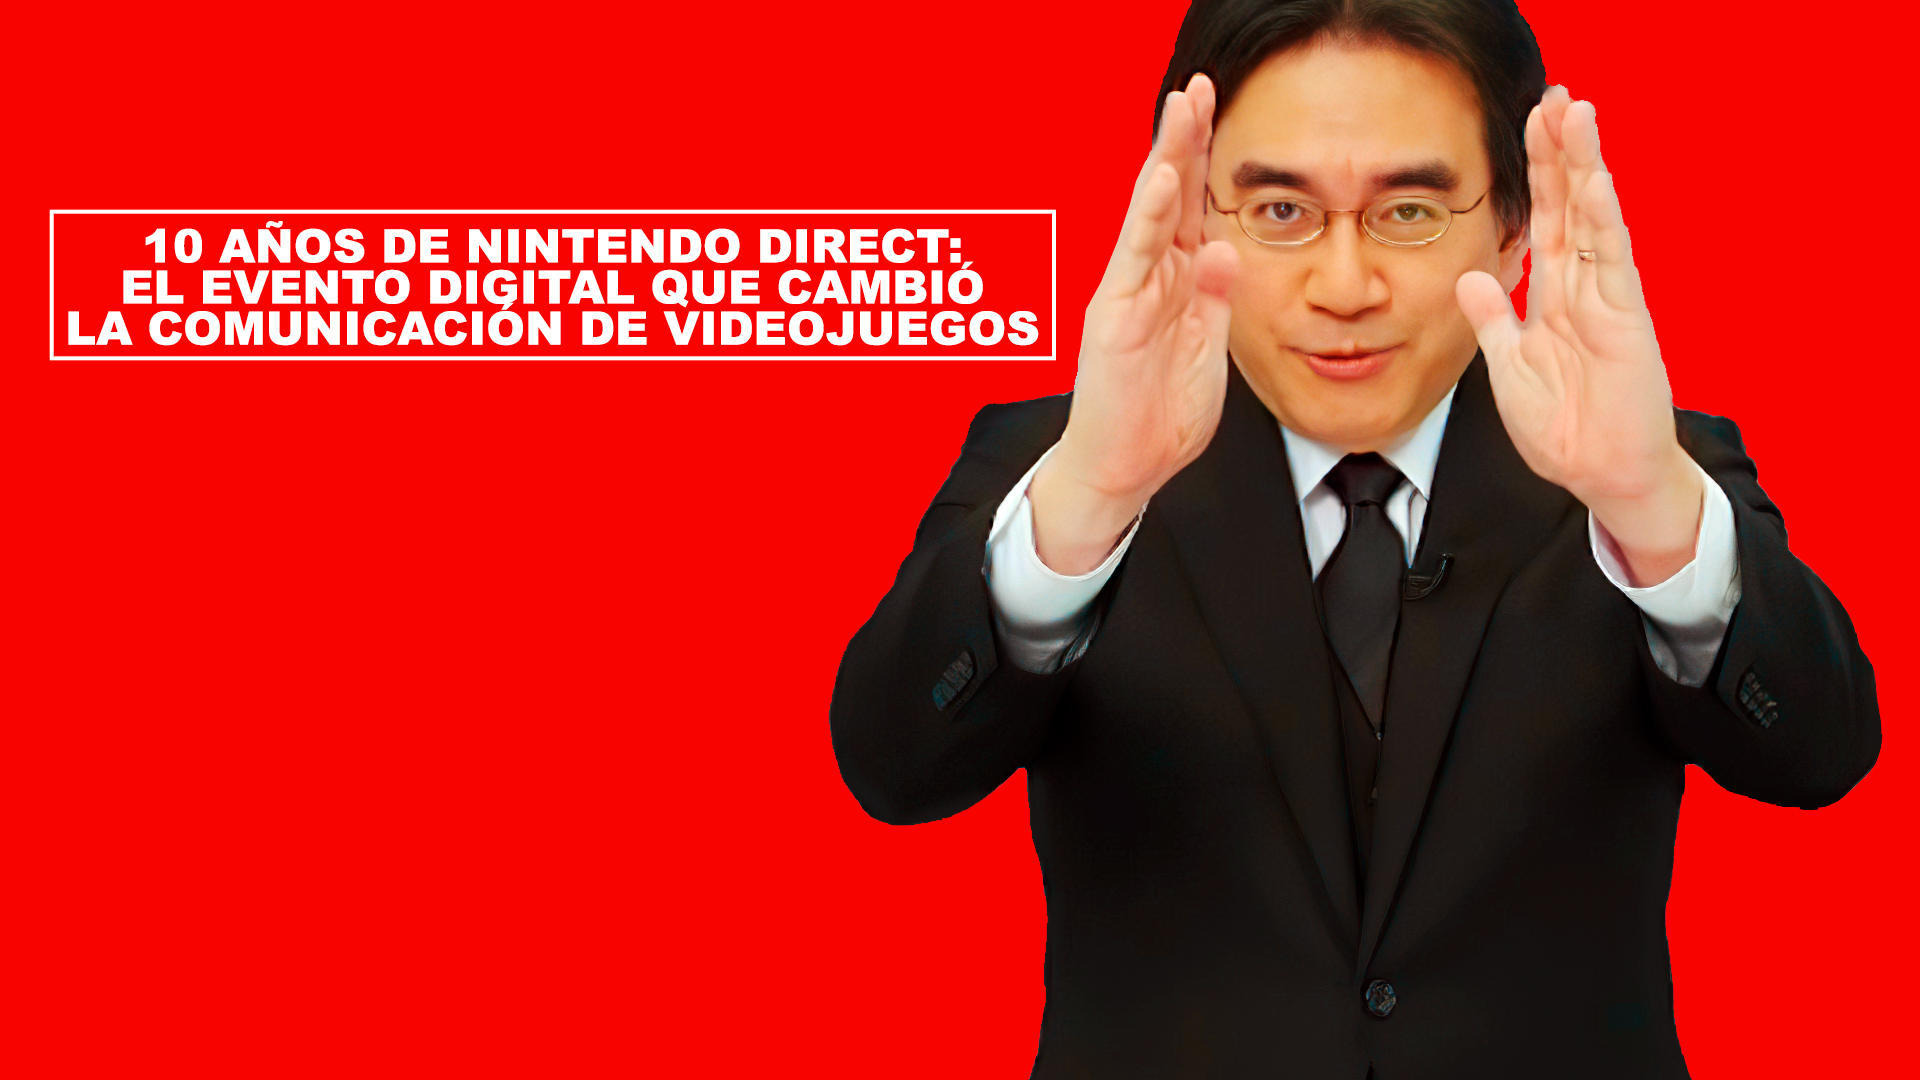 10 aos de Nintendo Direct: El evento digital que cambi la comunicacin de videojuegos